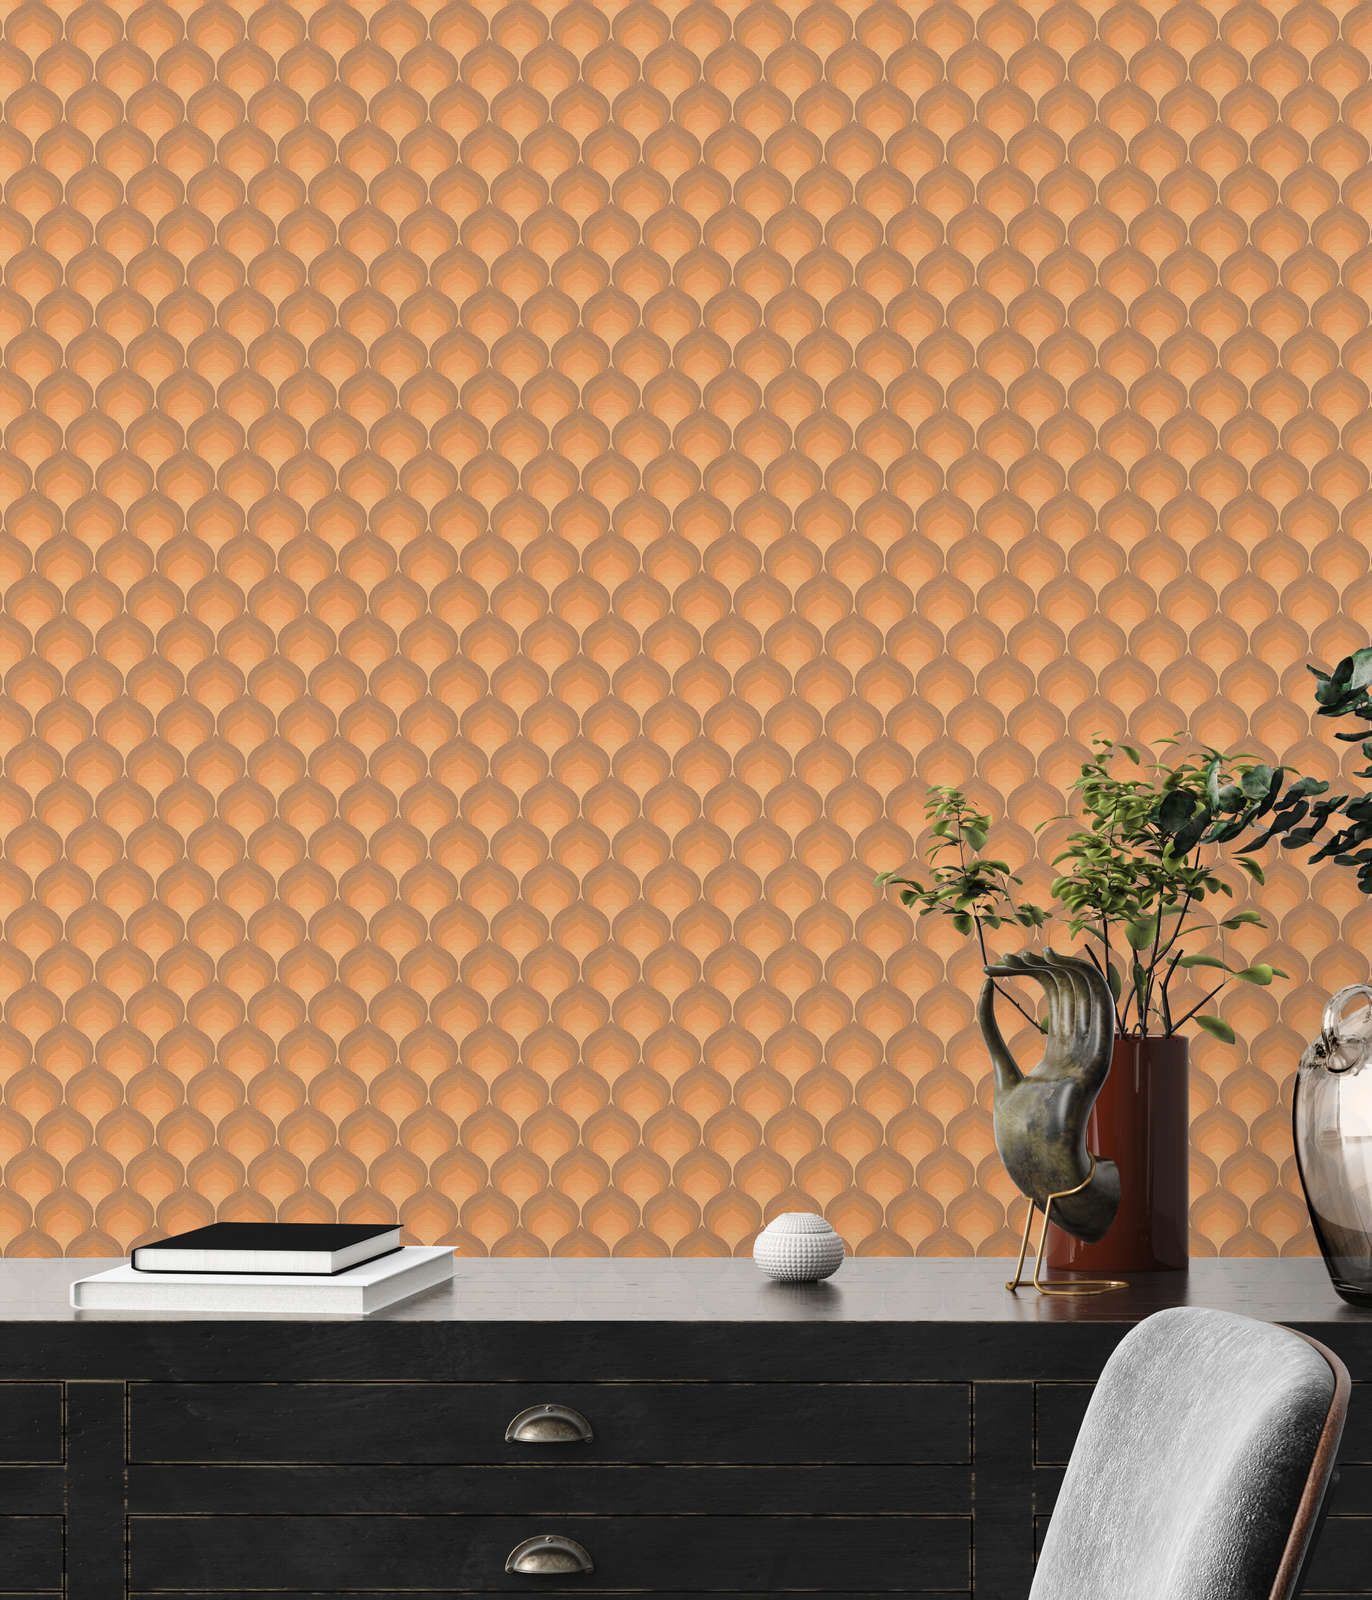             Retro Tapete mit strukturierten Schuppenmuster – Braun, Gelb, Orange
        